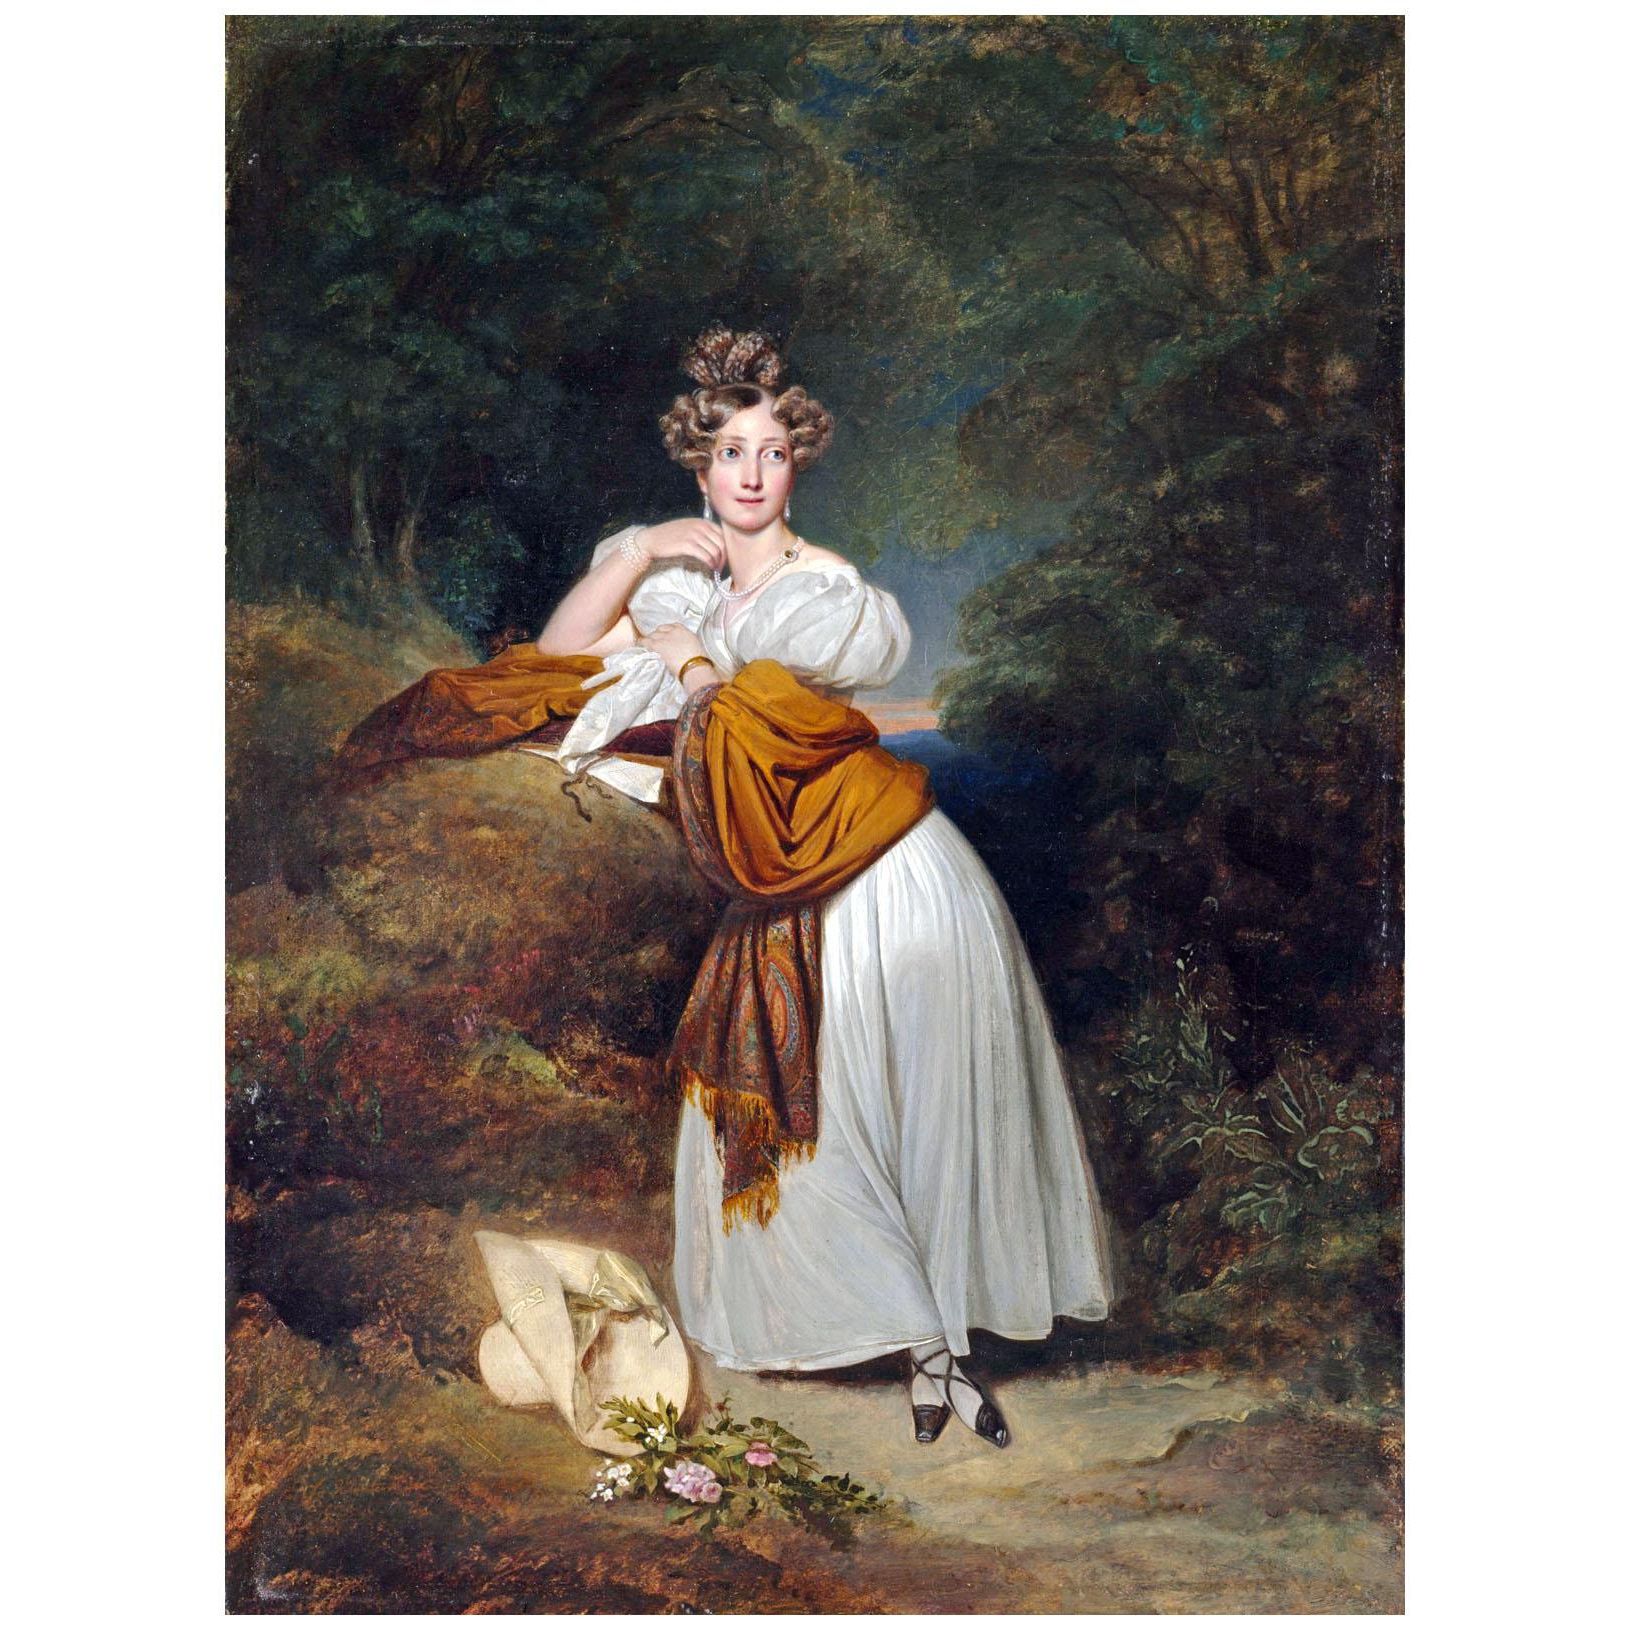 Franz Winterhalter. Markgraefin Sophie von Baden. 1831. Cleveland Museum of Art